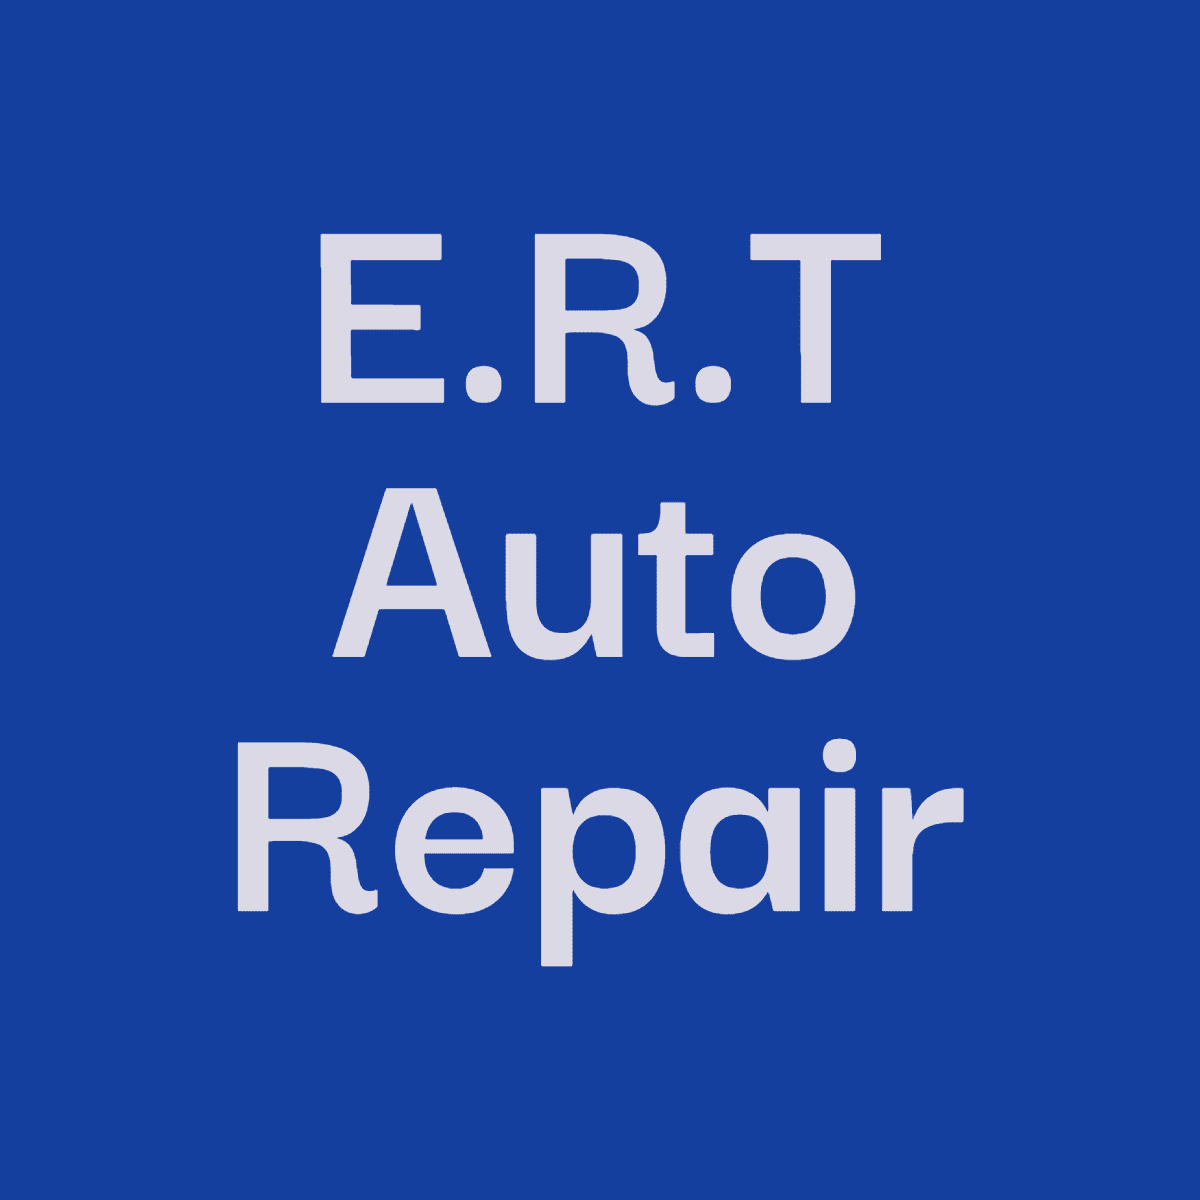 Images E.R.T Auto Repair